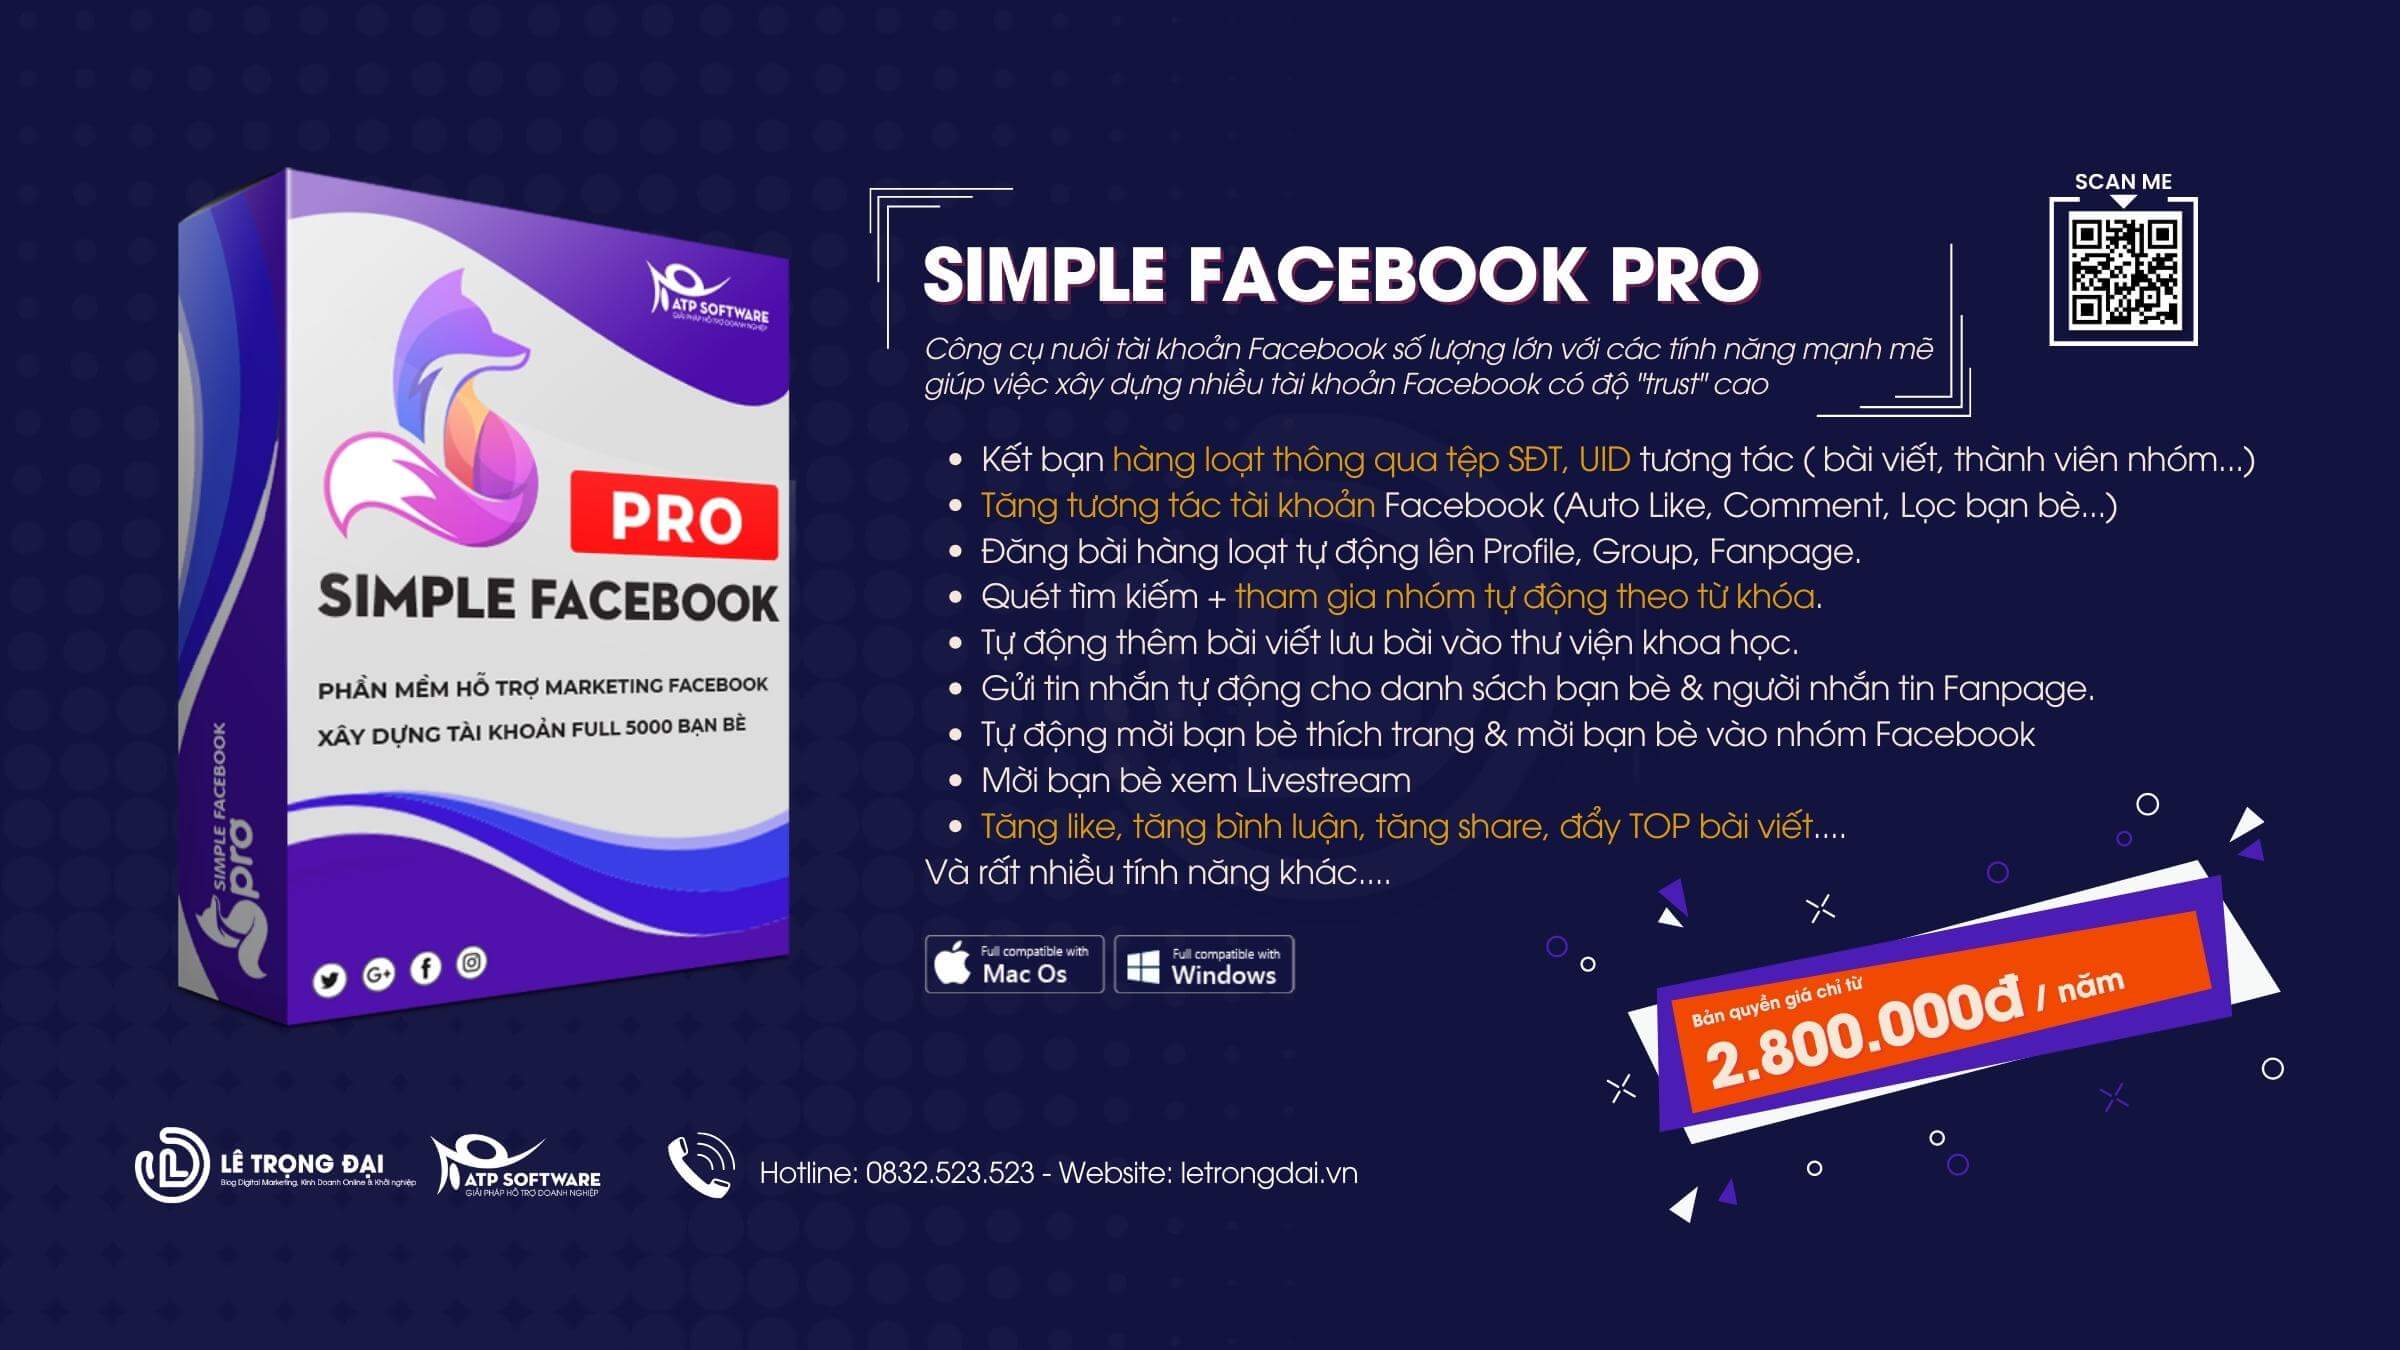 Phần mềm Simple Facebook Pro tìm kiếm khách hàng tiềm năng Facebook 4